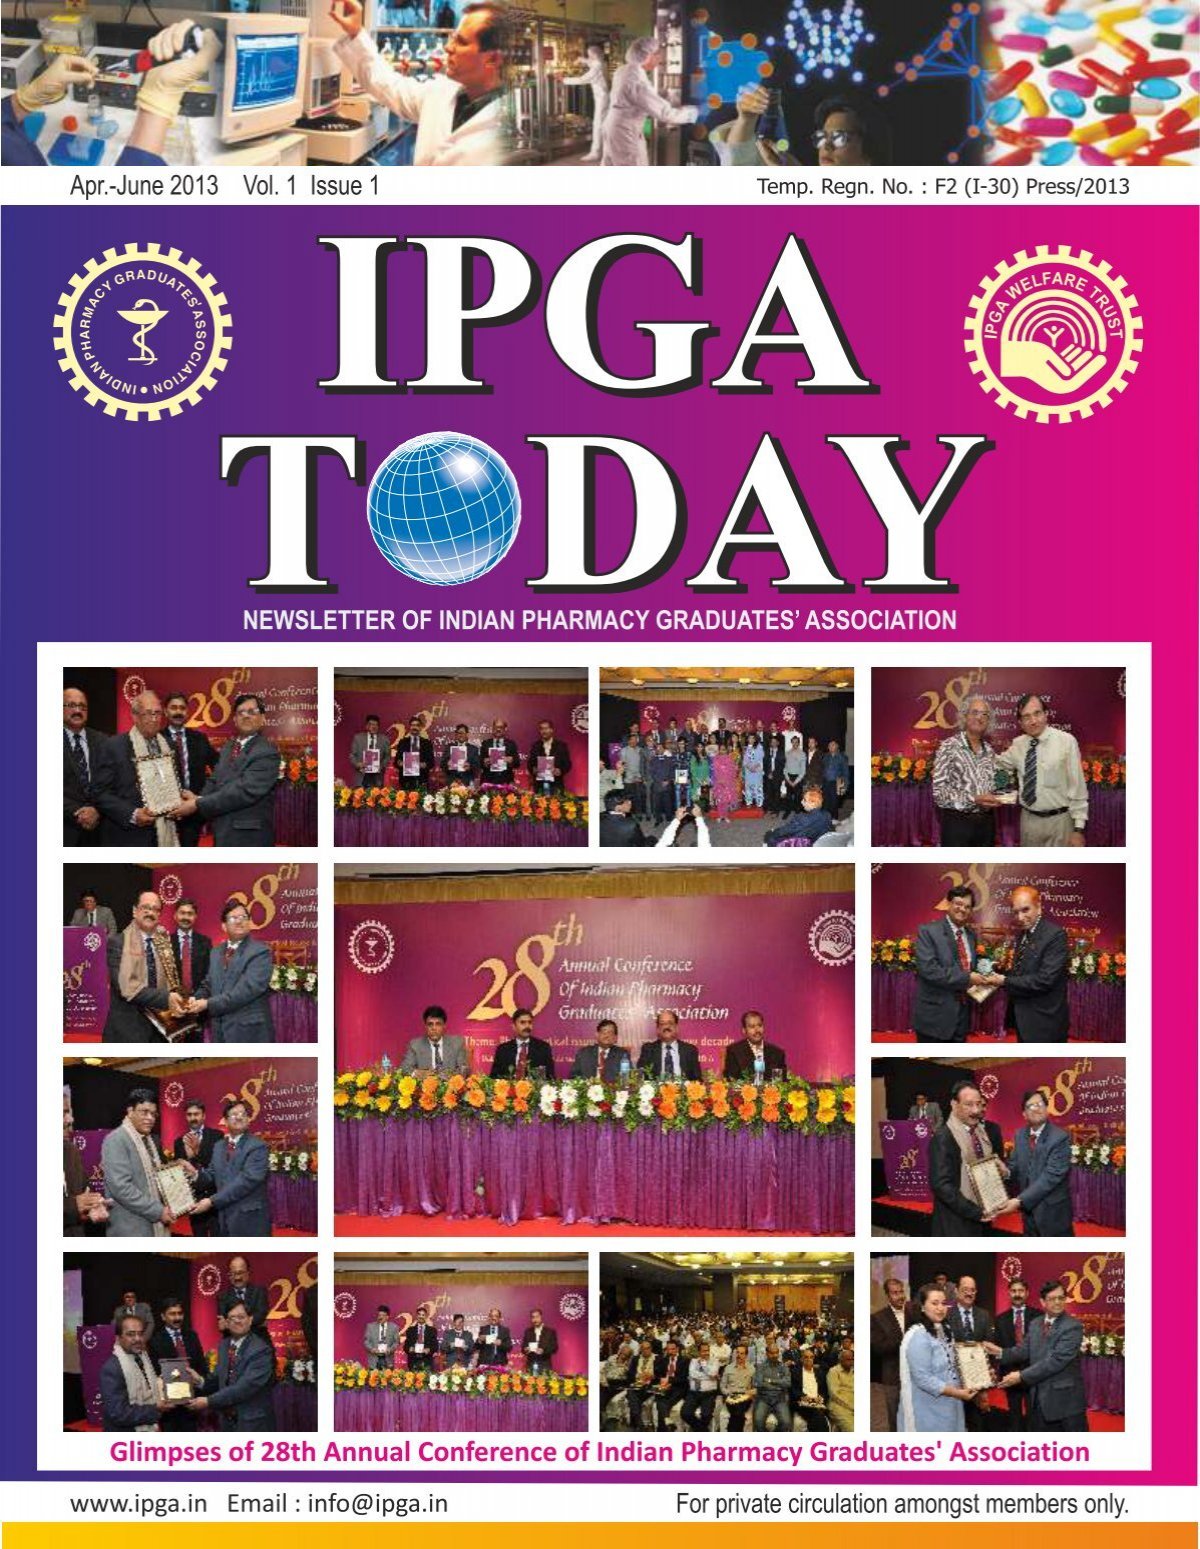 ipga today - Indian Pharmacy Graduates' Association